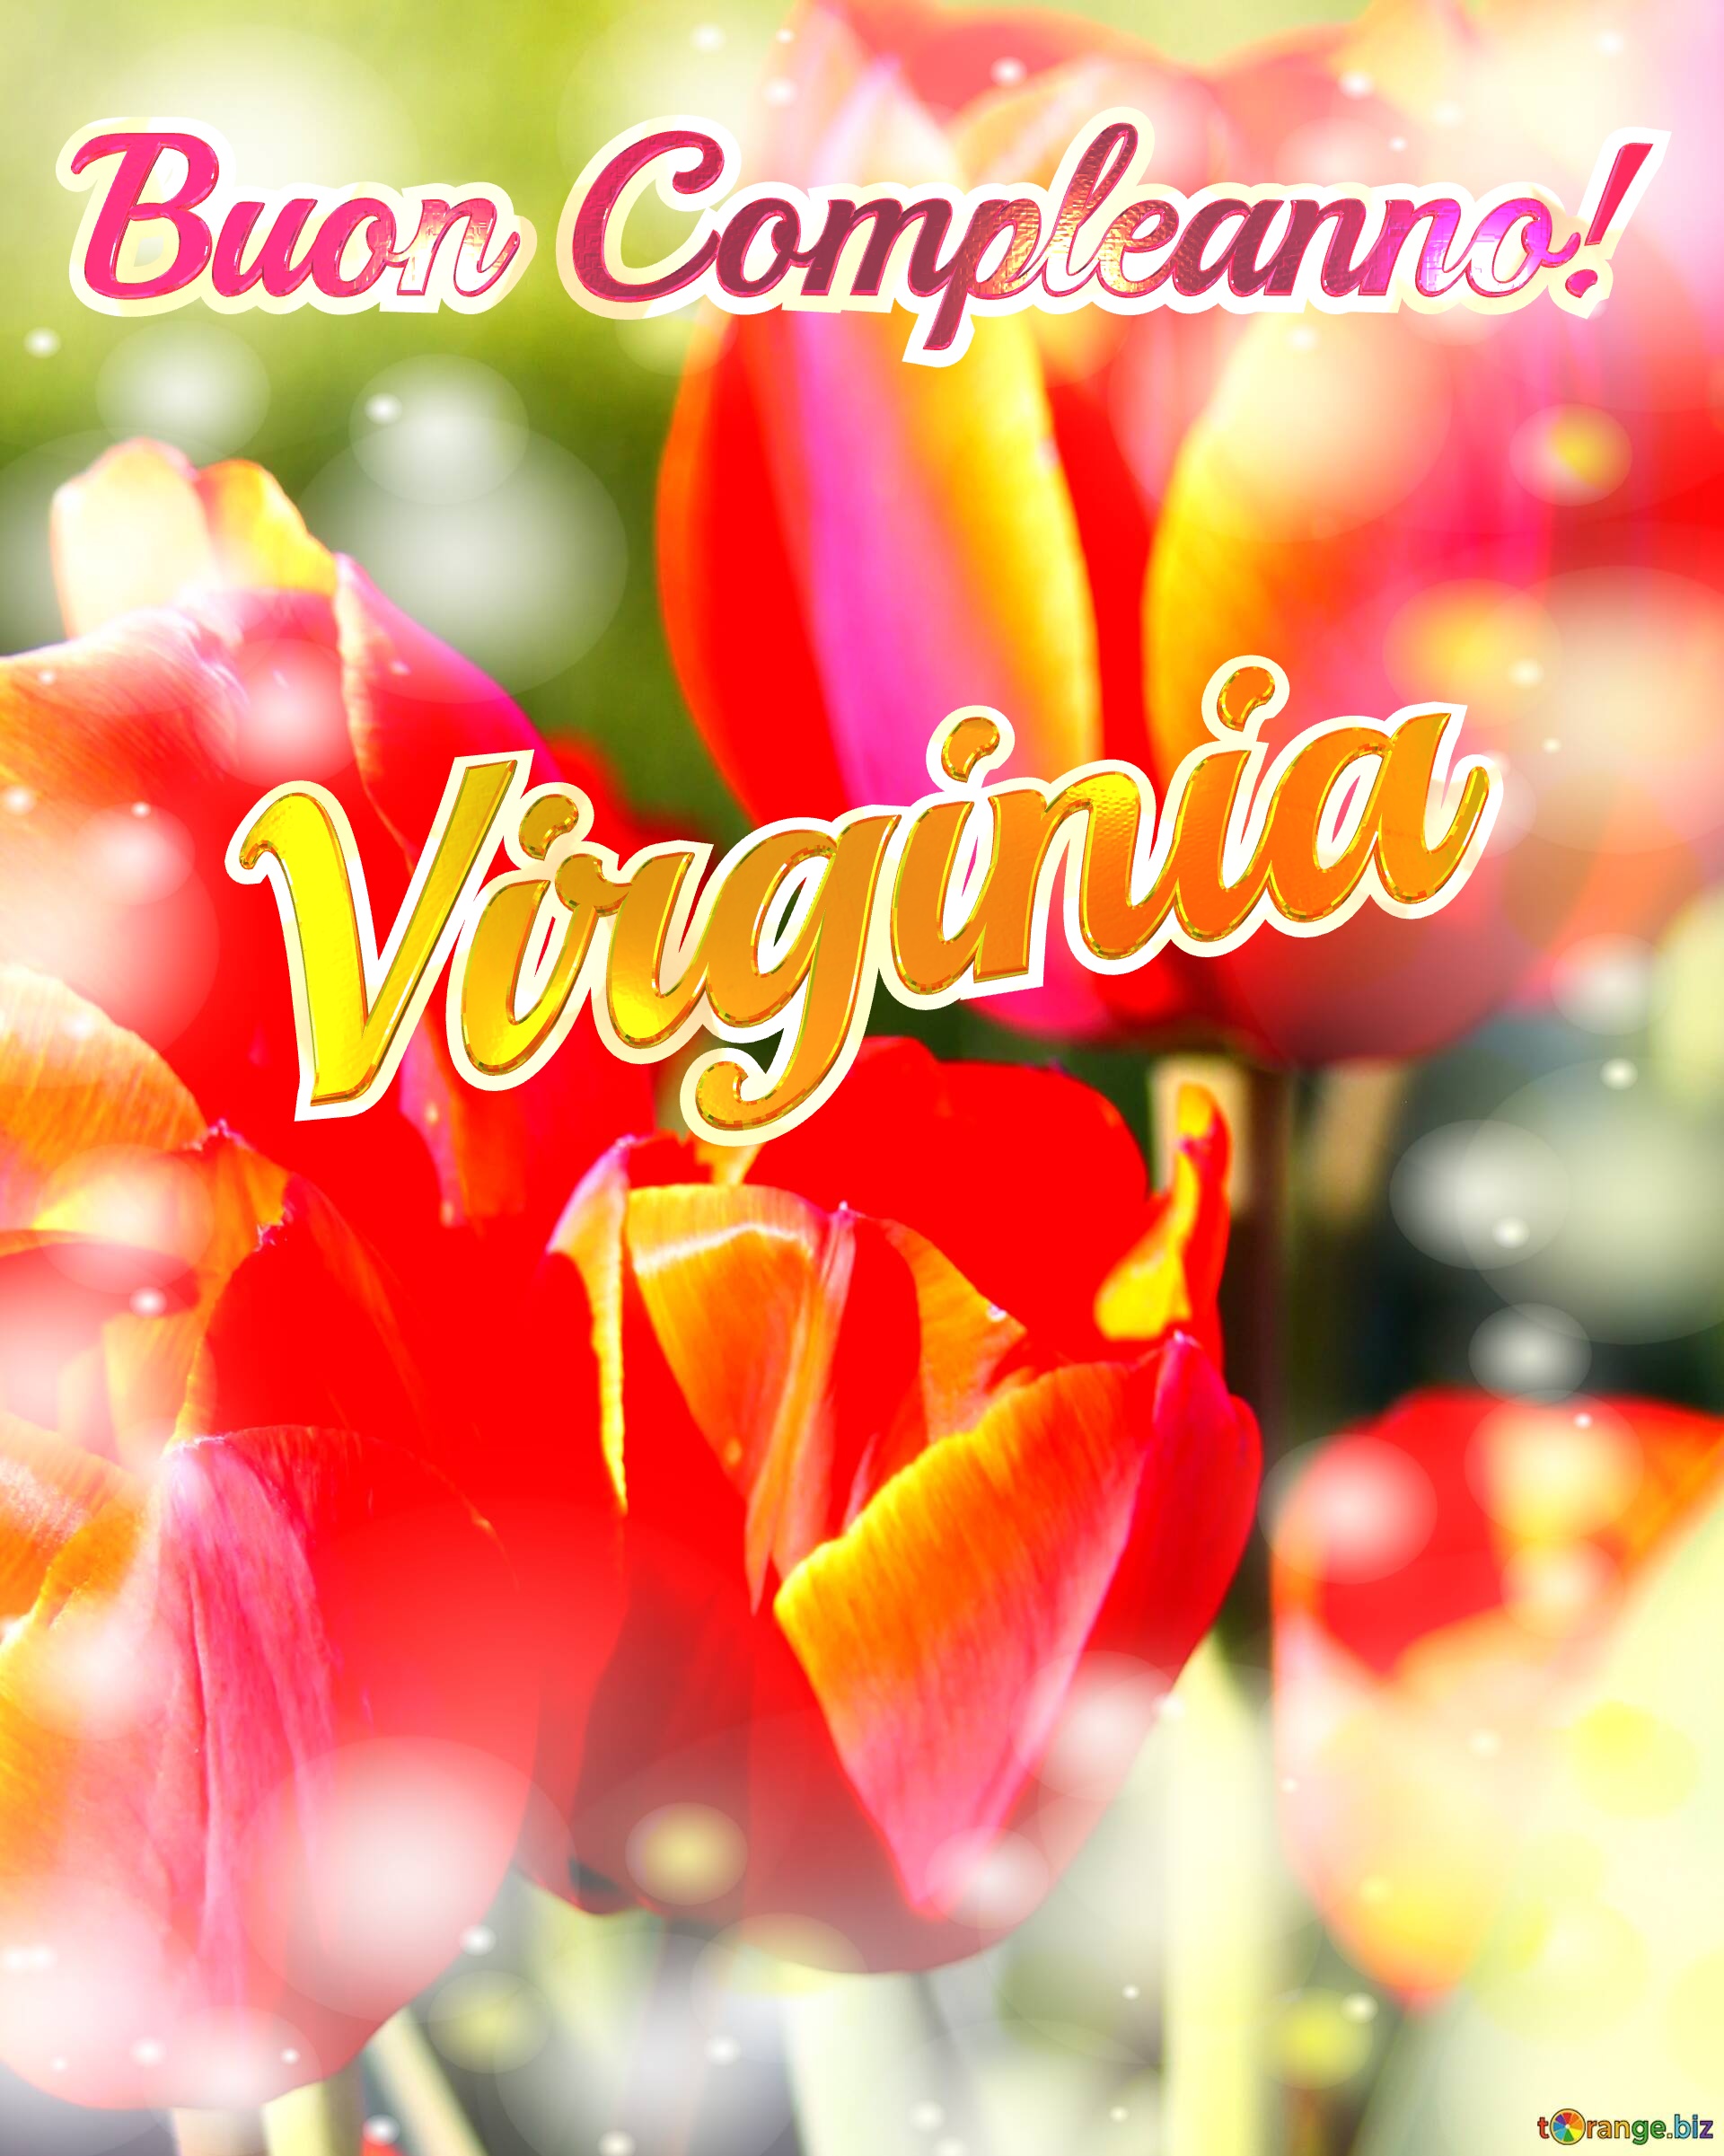 Buon Compleanno! Virginia  La bellezza dei tulipani è un richiamo alla bellezza della vita, auguri per una vita piena di bellezza e soddisfazione. №0